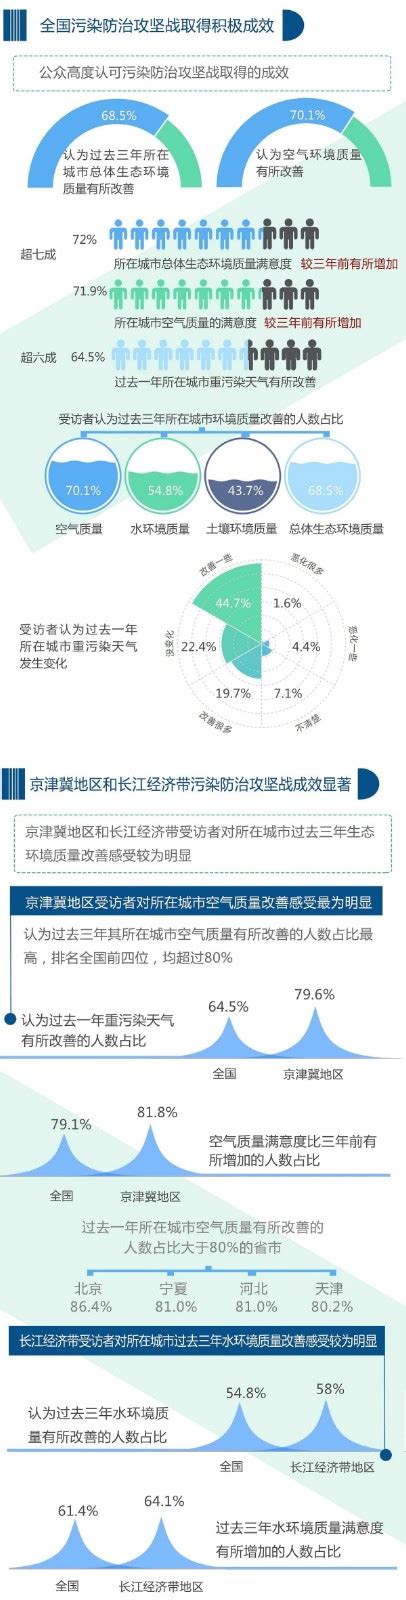 《公民生态环境行为调查报告（2020年）》发布-广东环保公益网 | 广东省环境保护基金会